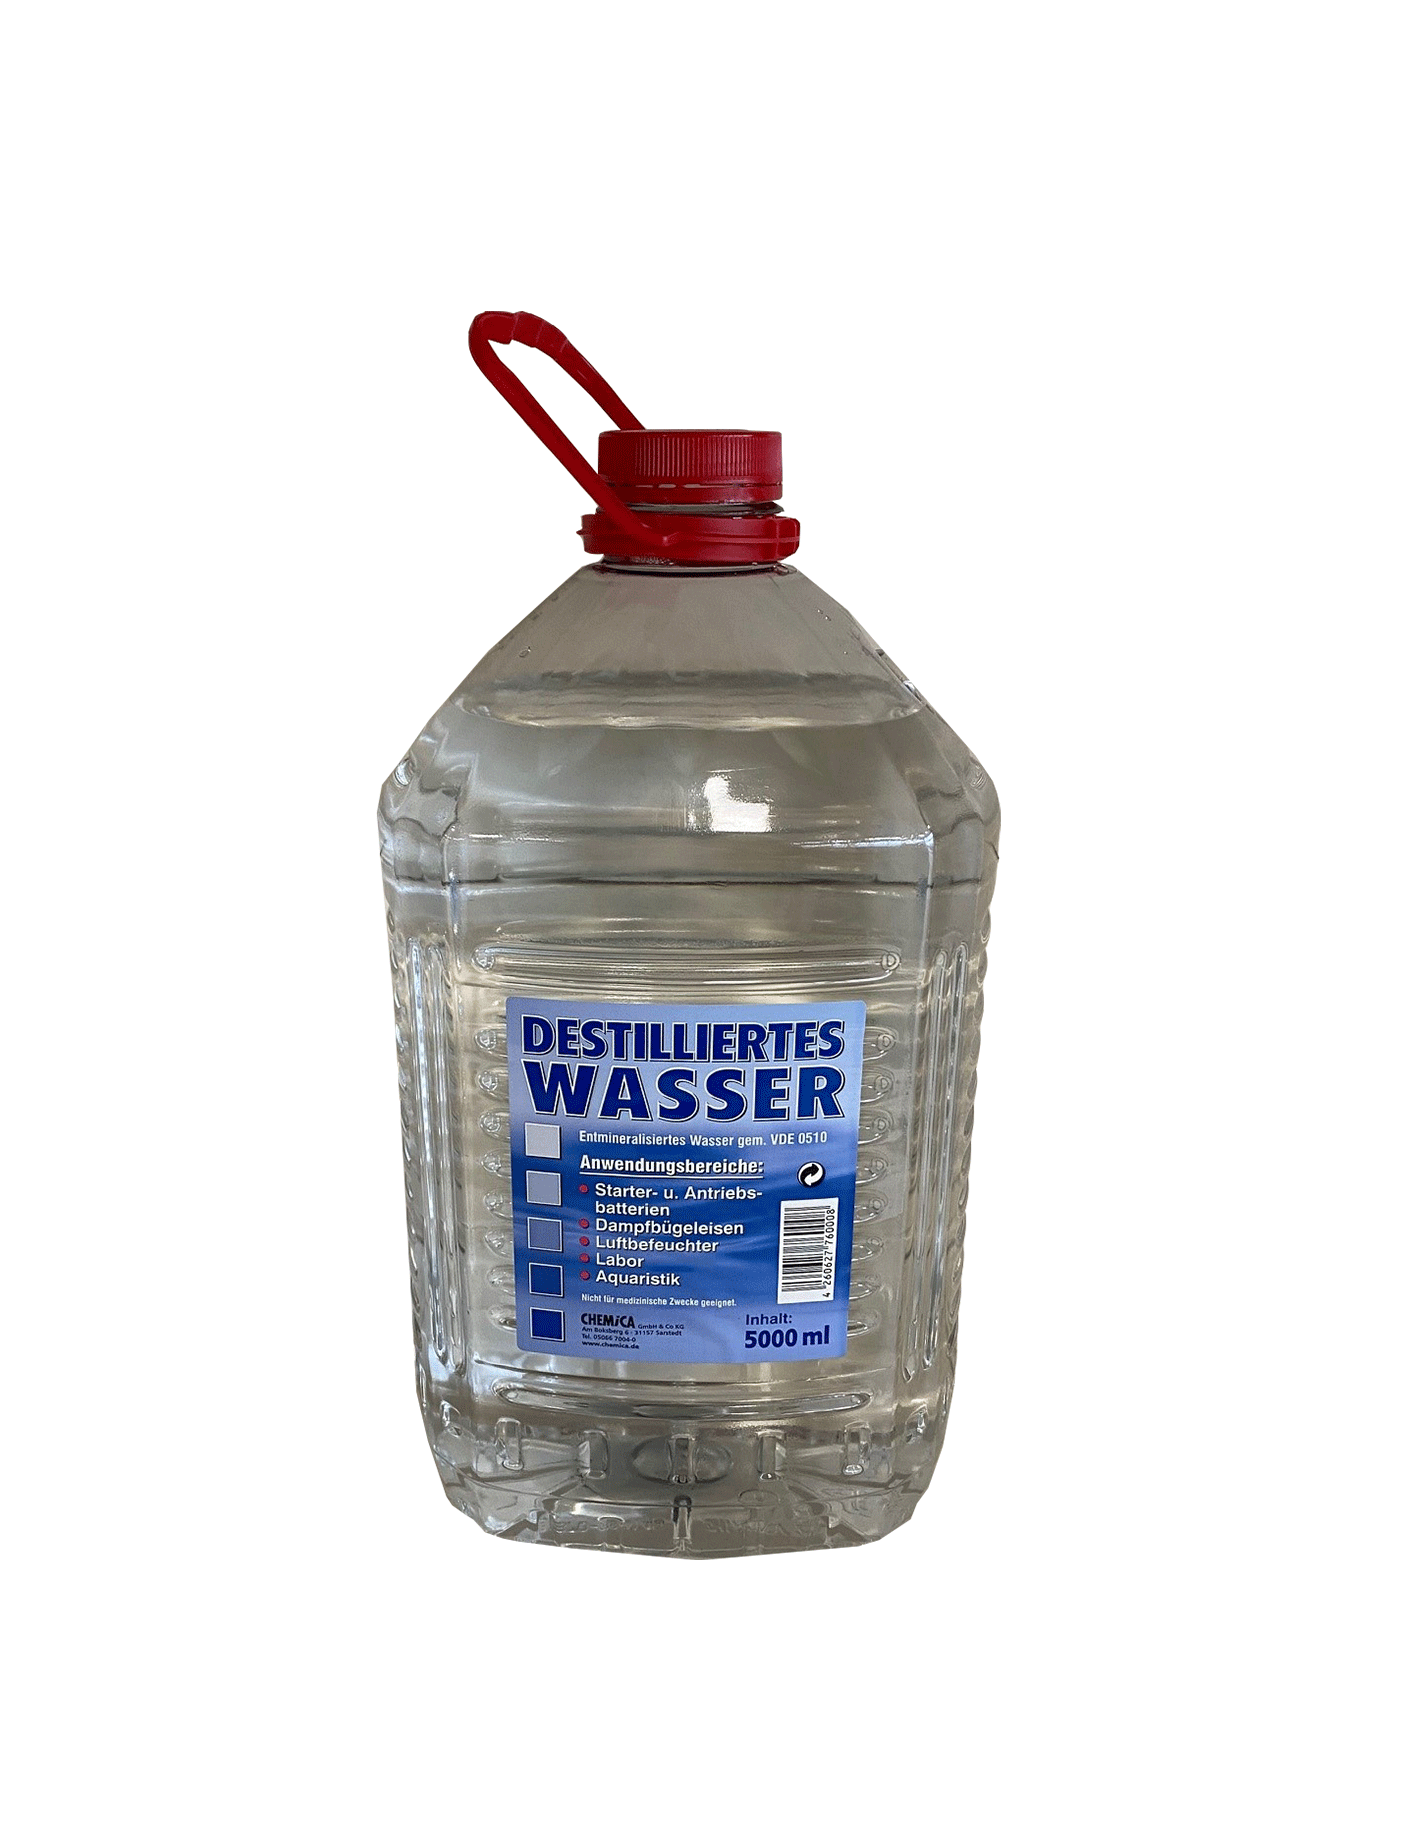 Destilliertes Wasser kaufen bei JUMBO